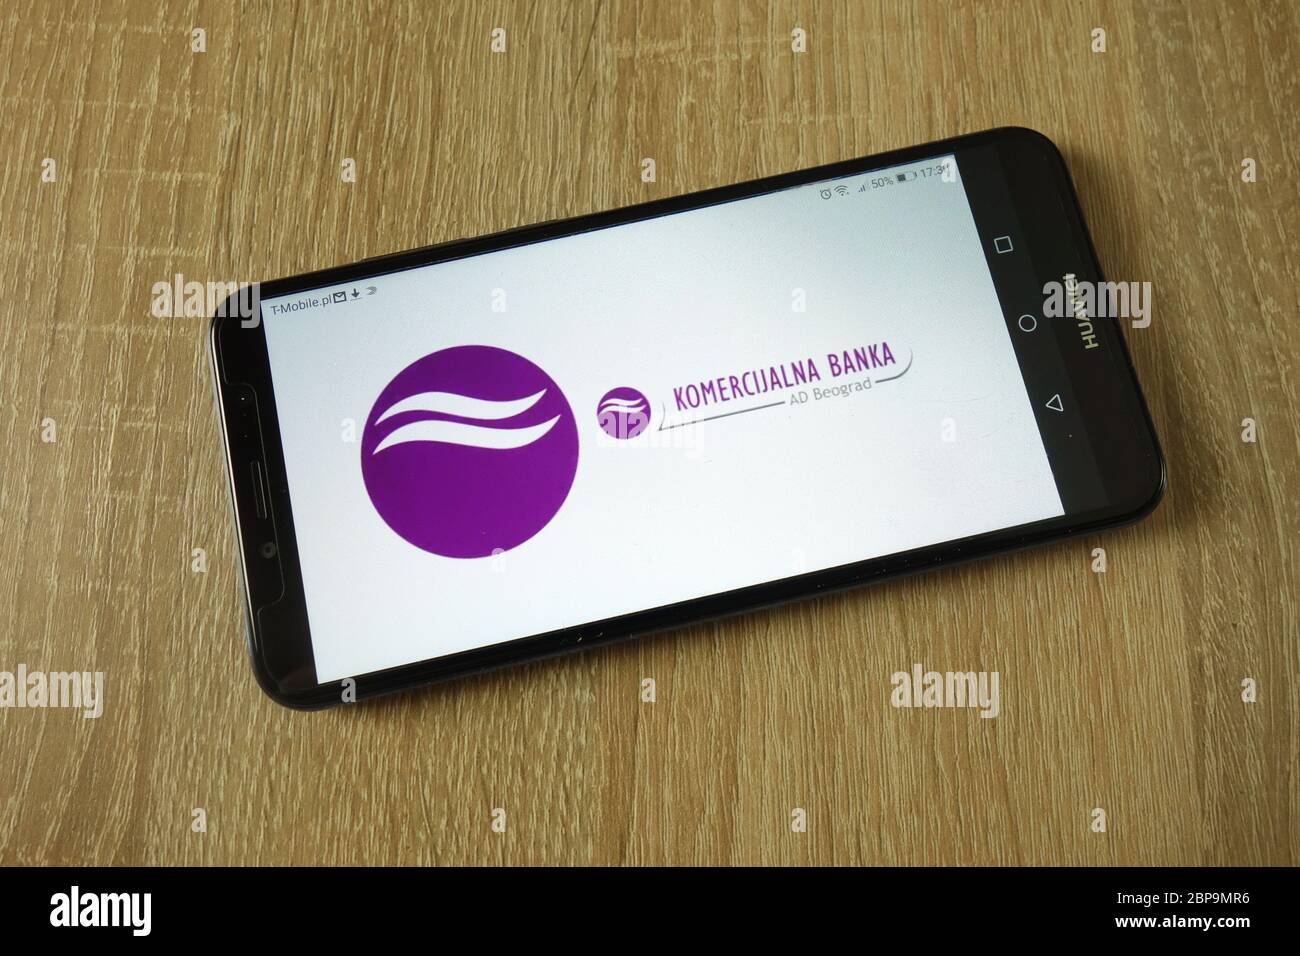 Komercijalna banka logo displayed on smartphone Stock Photo - Alamy